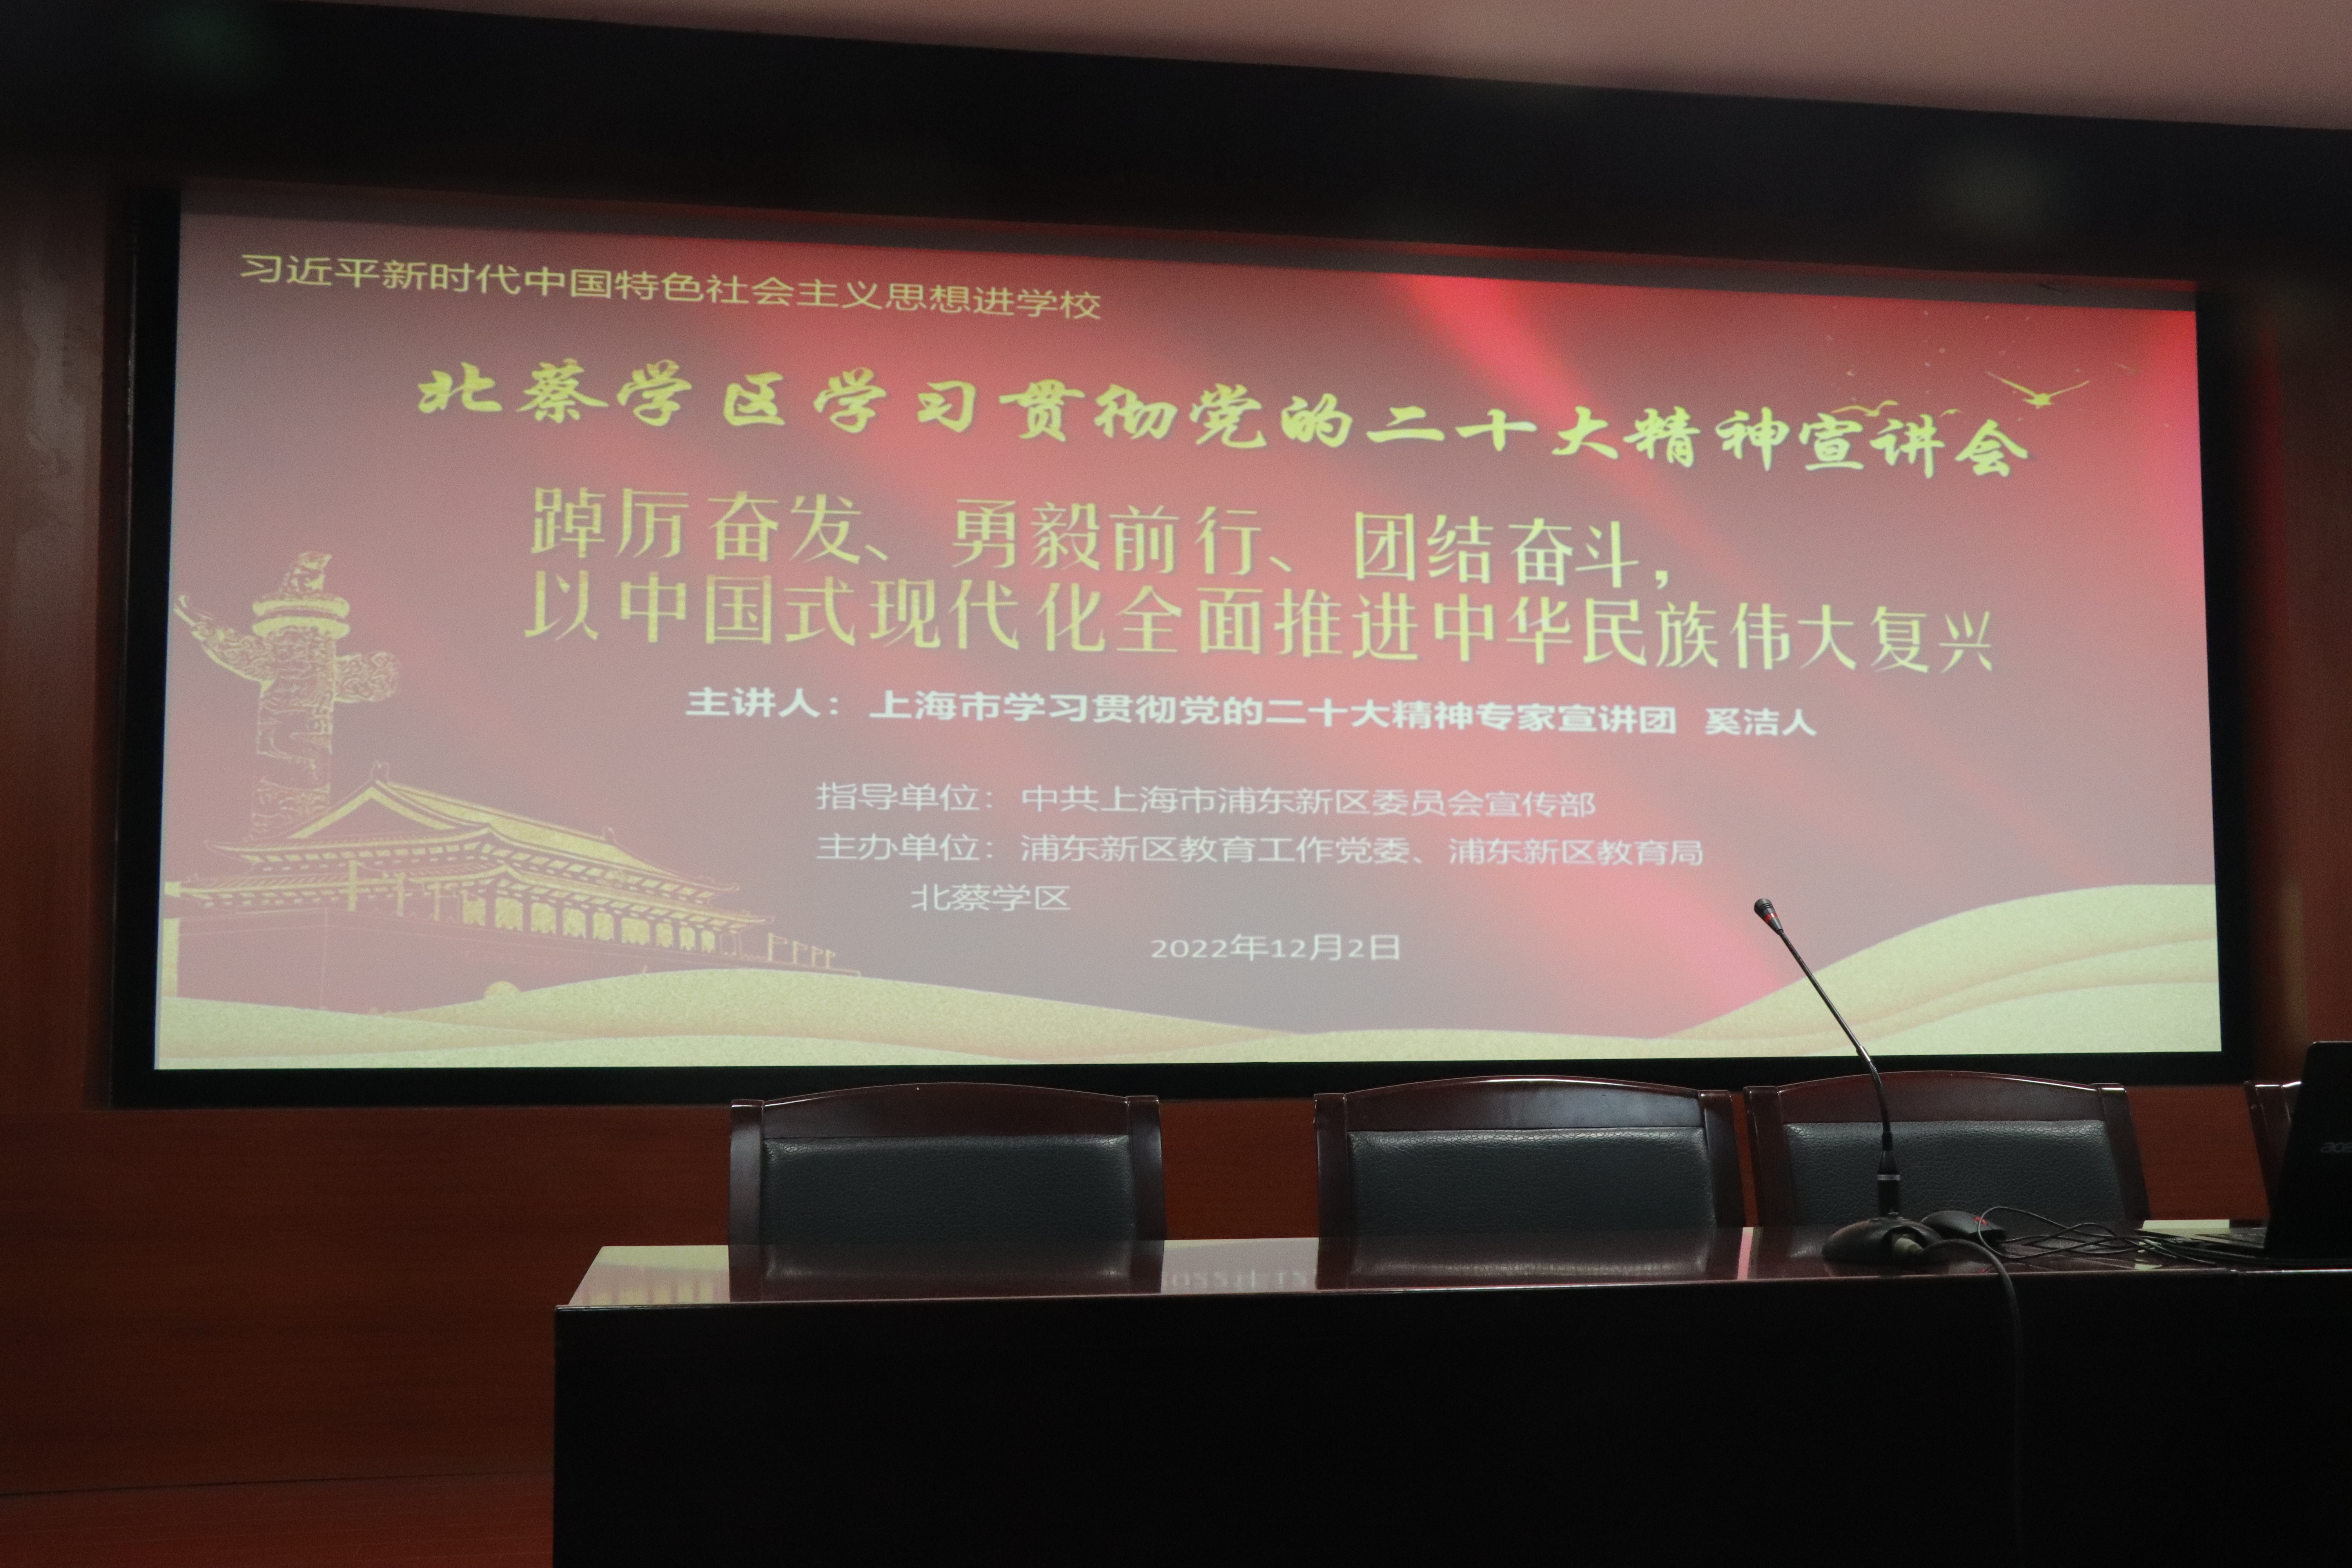 1、2022.12上海市北蔡学区党的二十大报告，插入报告标题二.JPG